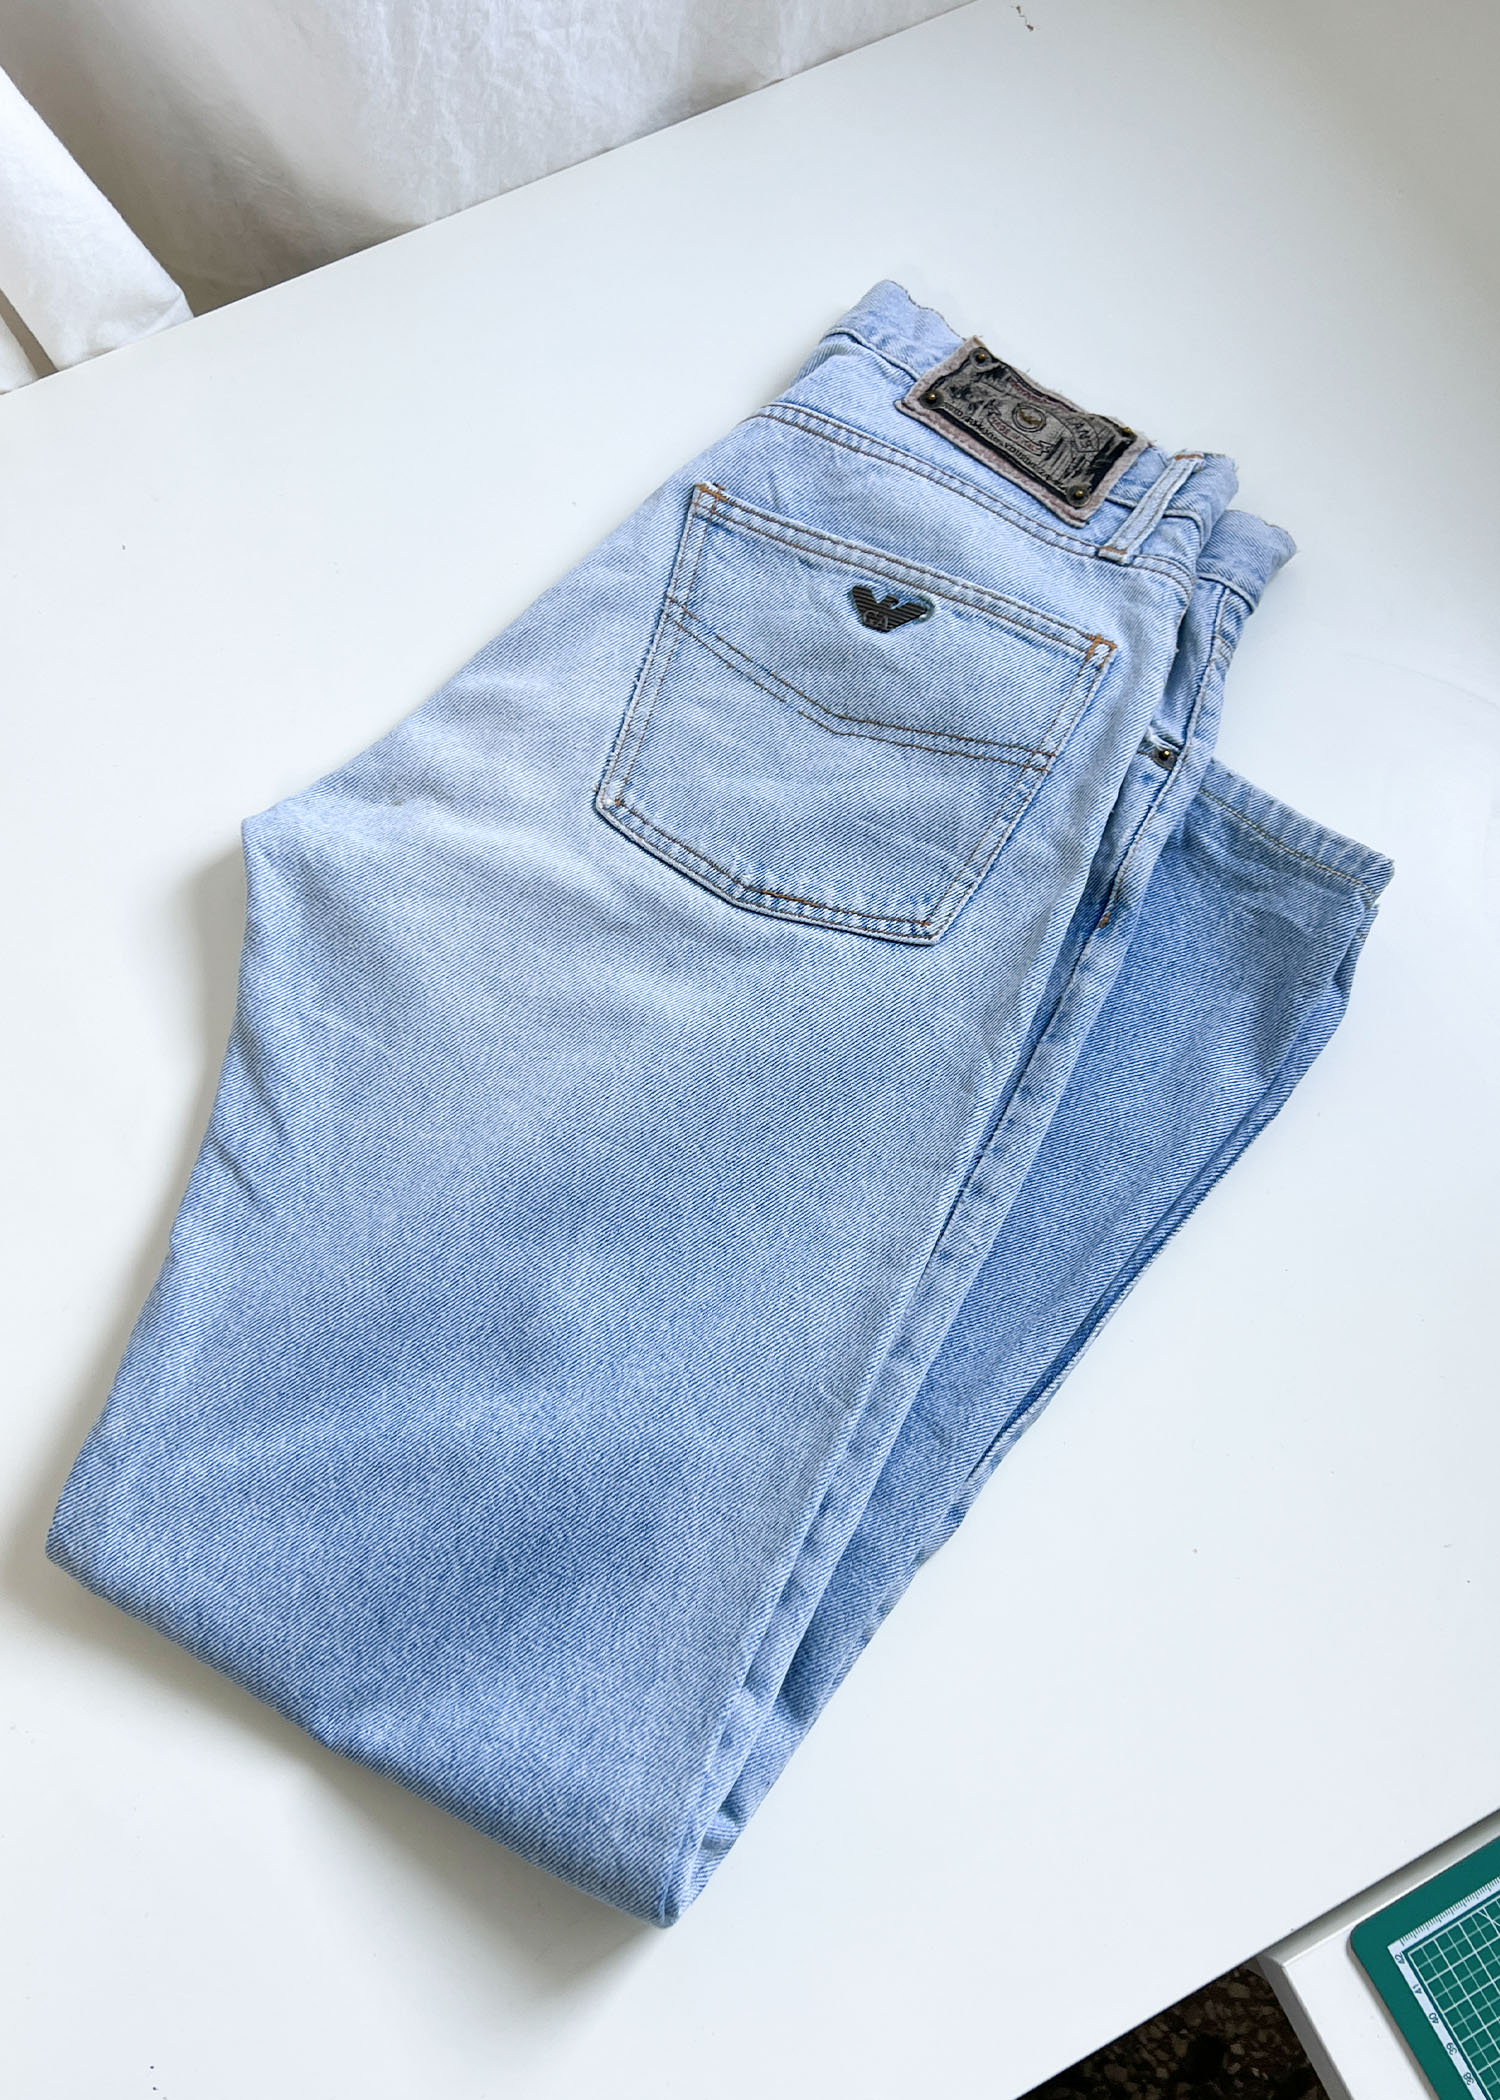 Armani jeans light jean